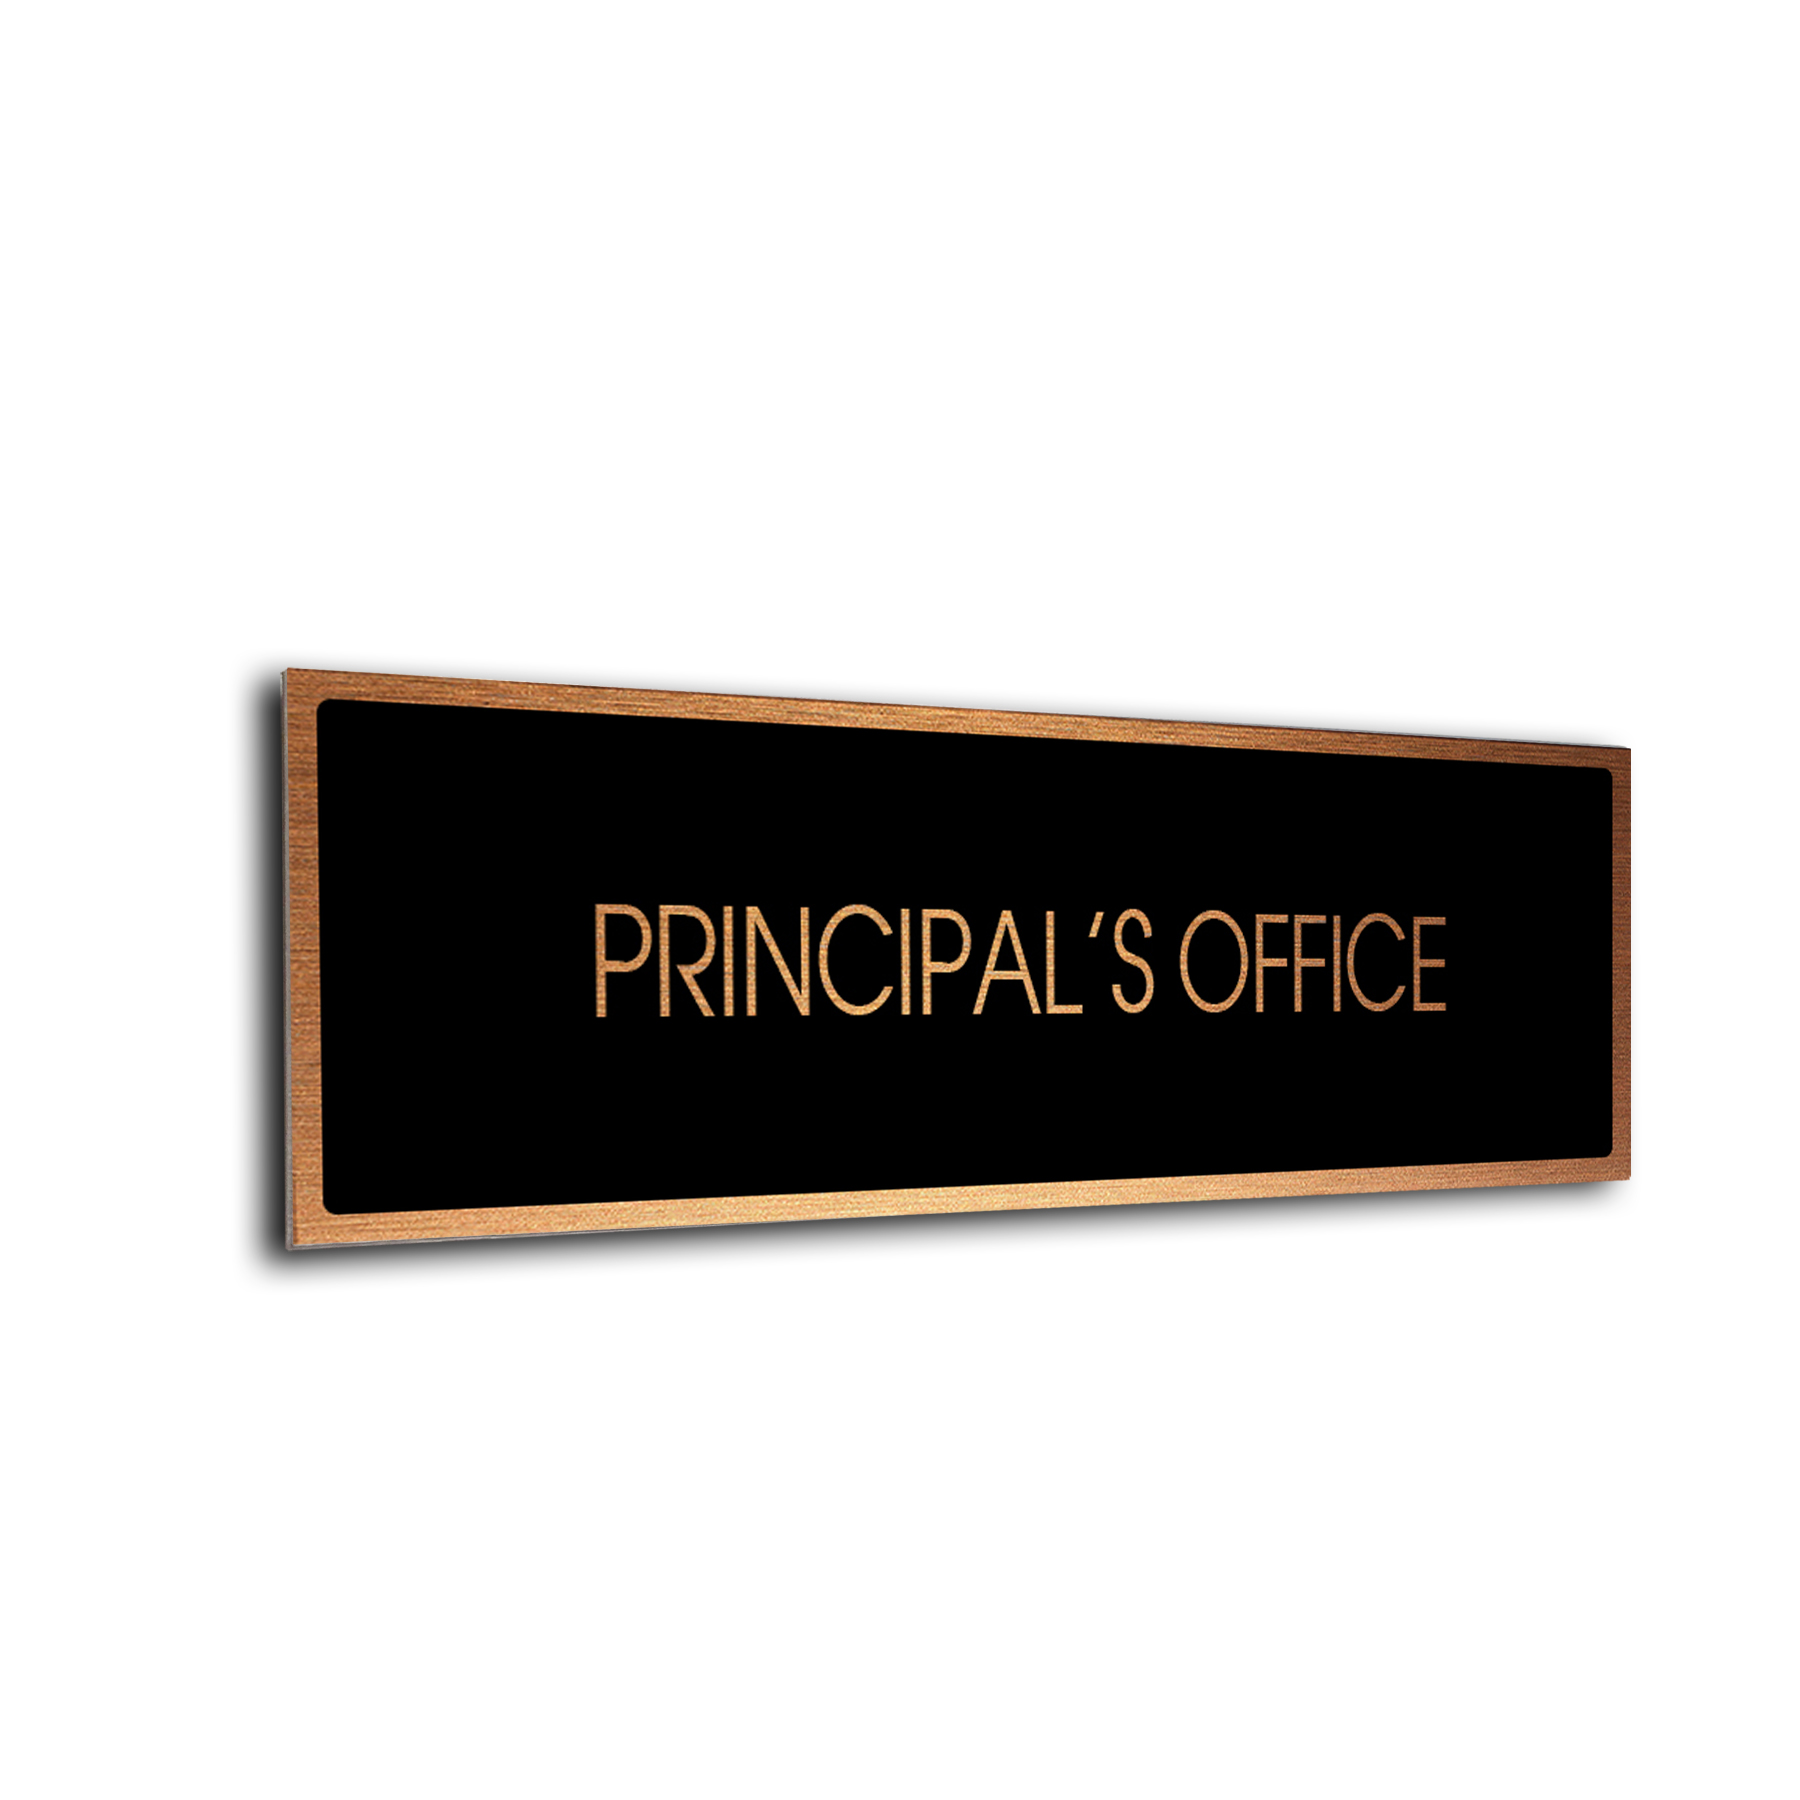 Principals Office Door Sign - Modern Brushed Metal Door Sign DMD-2220114